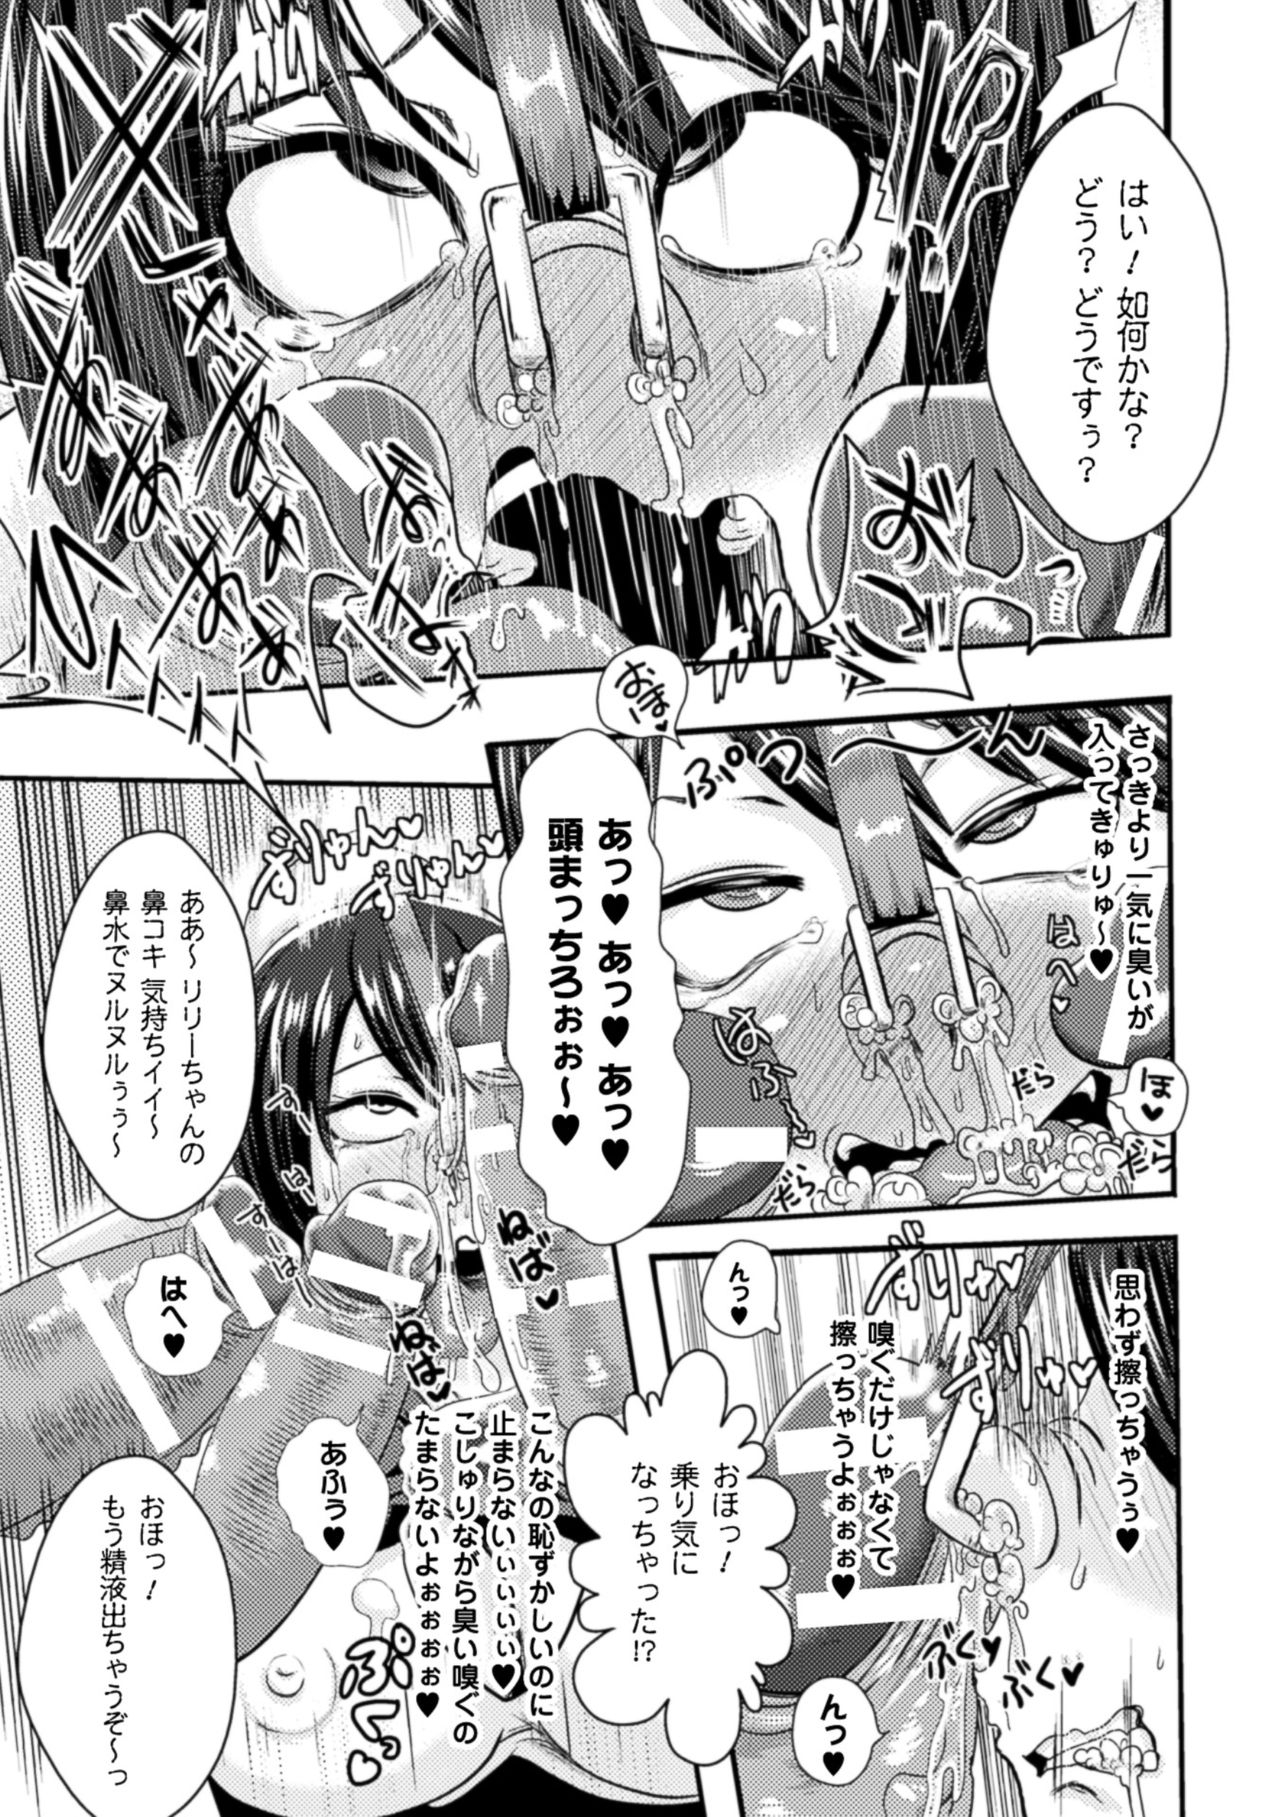 [Akuochisukii Sensei] Akuochisukii Sensei no Heroine Haiboku no Houteishiki - Equation of Heroine's defeat by Mr. Akuochisukii [Digital] 122